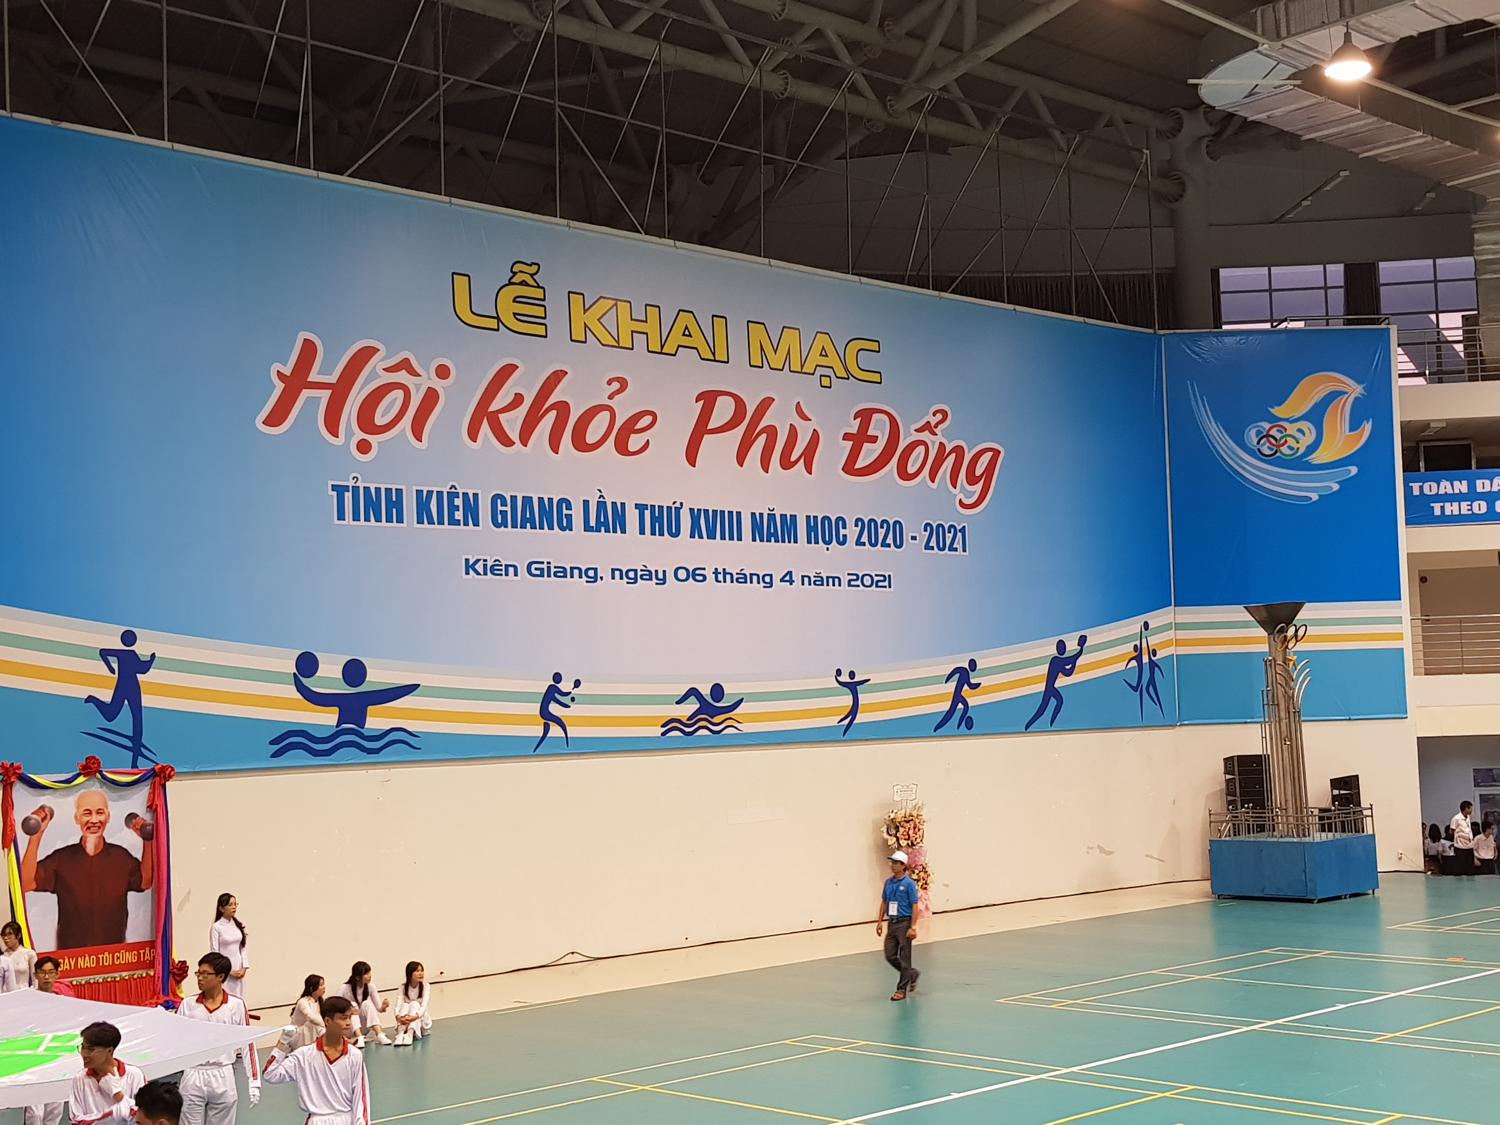 Tham gia Hội Khỏe Phù Đổng tỉnh Kiên Giang, lần thứ XVIII năm học 2020-2021